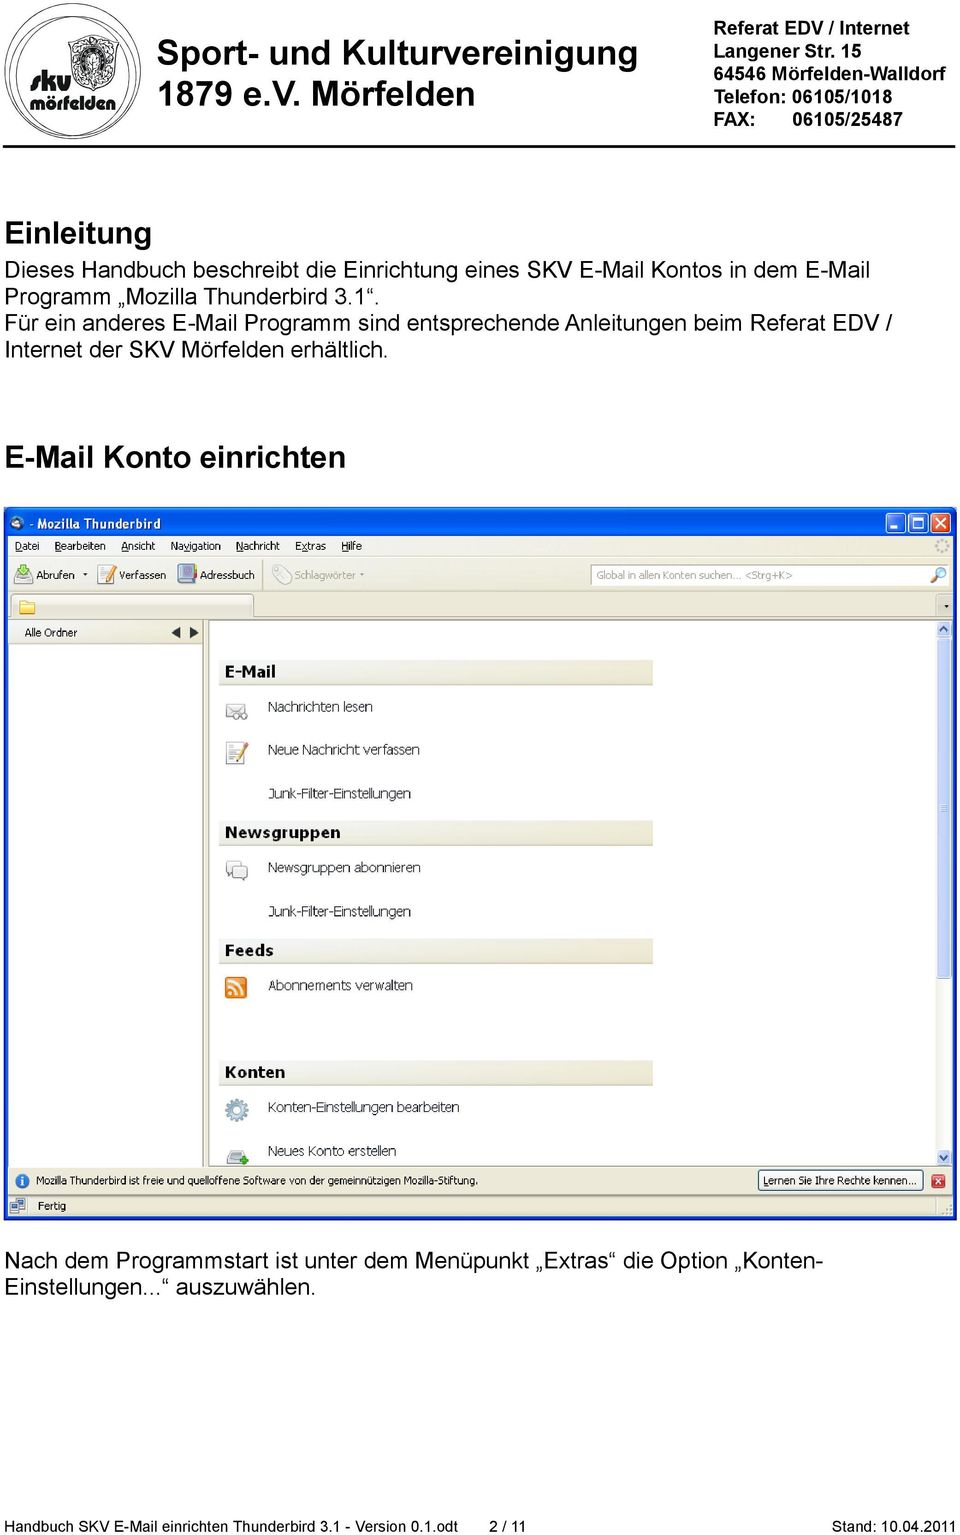 Für ein anderes E-Mail Programm sind entsprechende Anleitungen beim Referat EDV / Internet der SKV Mörfelden